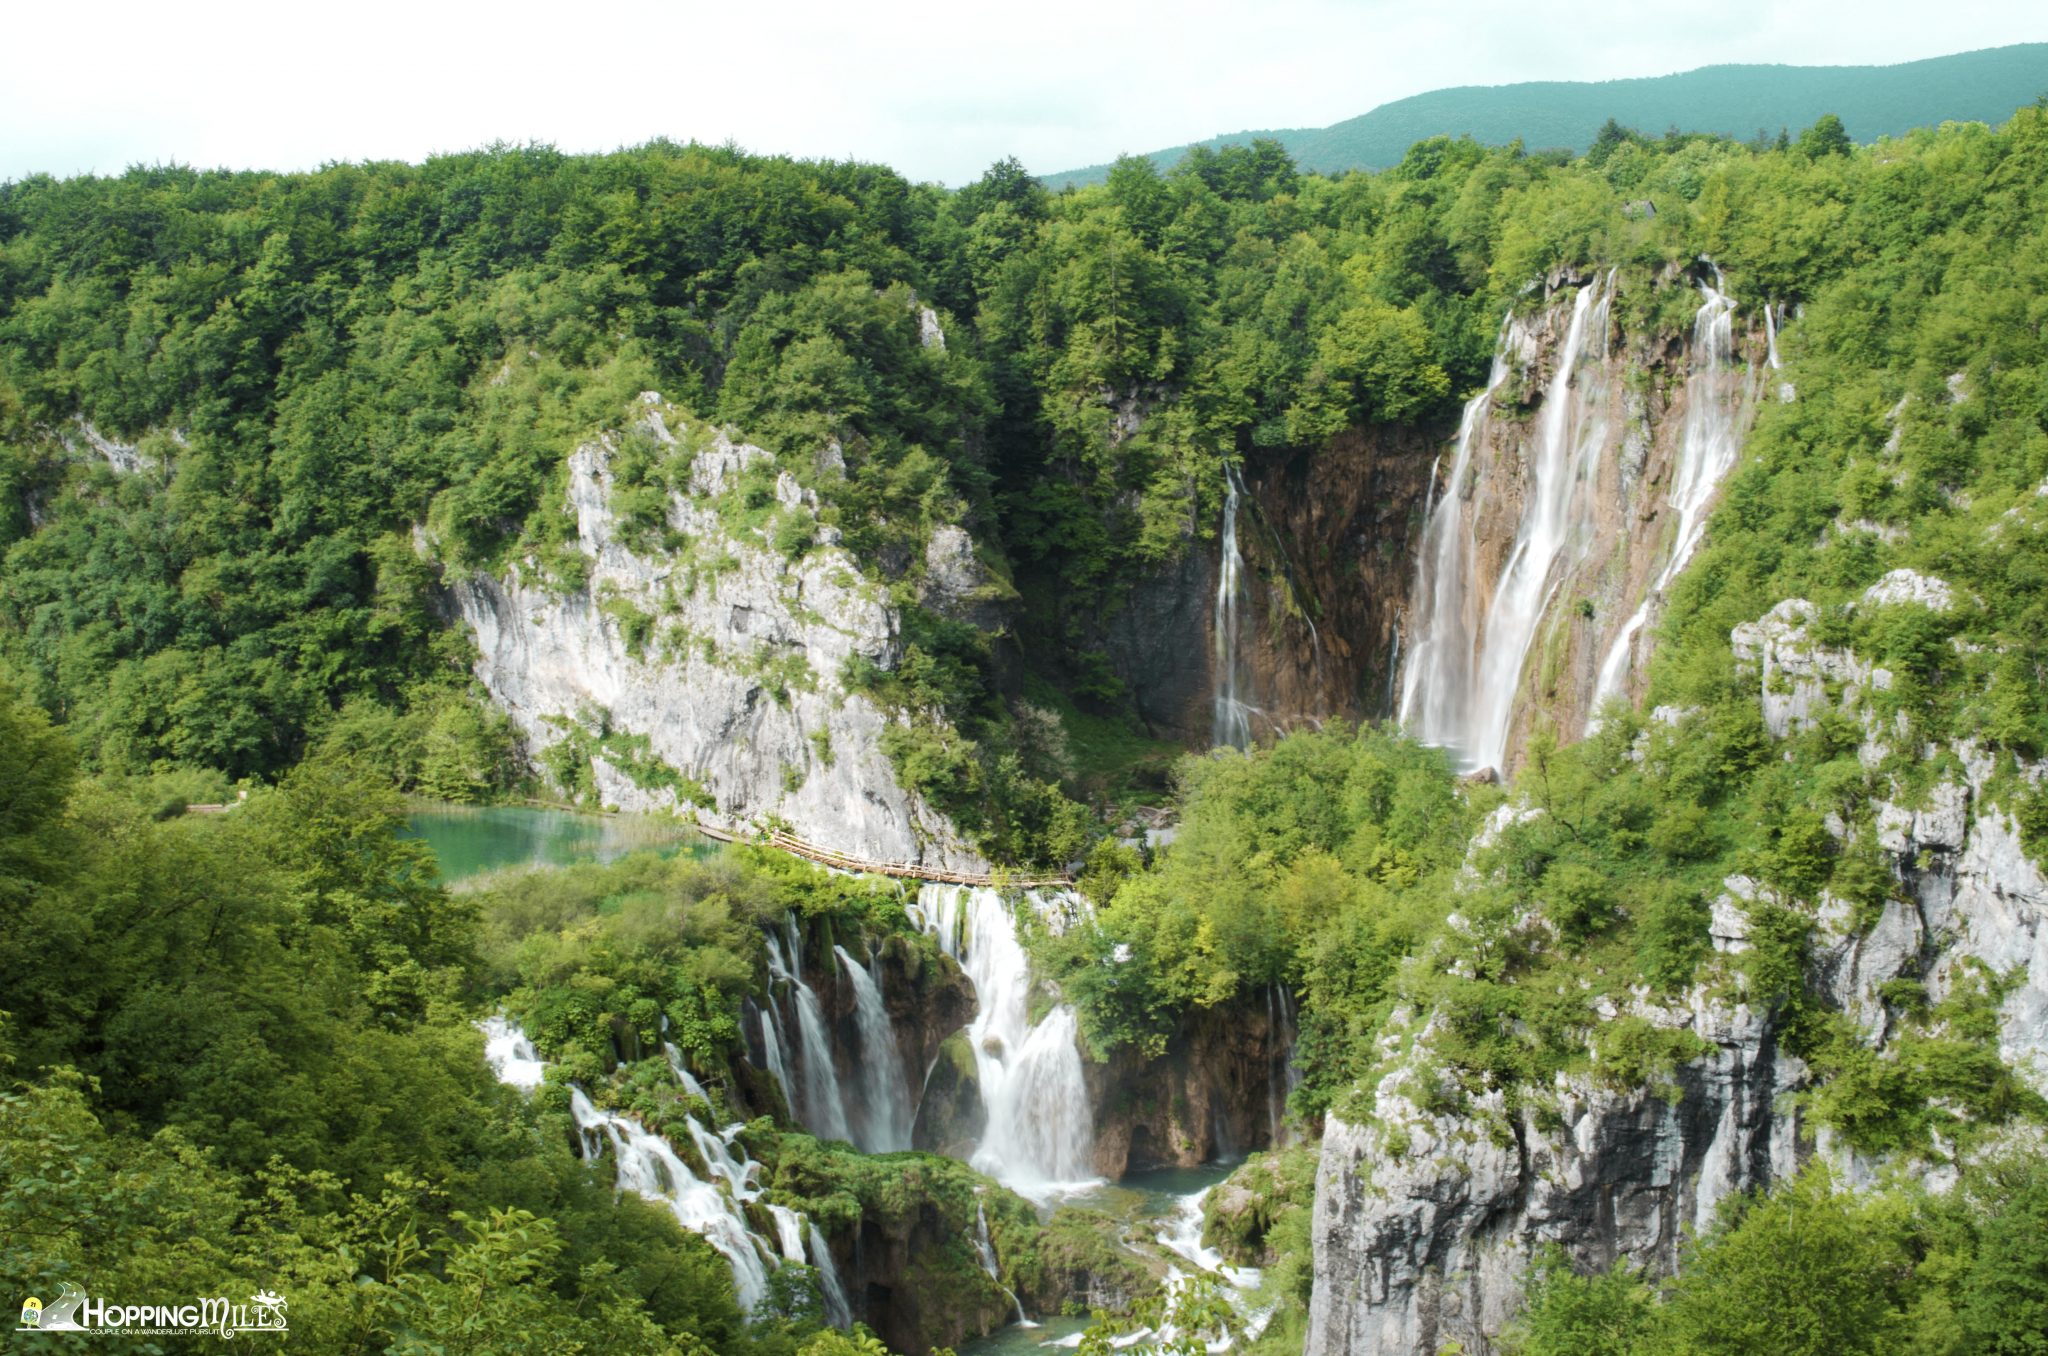 Reasons to visit Croatia